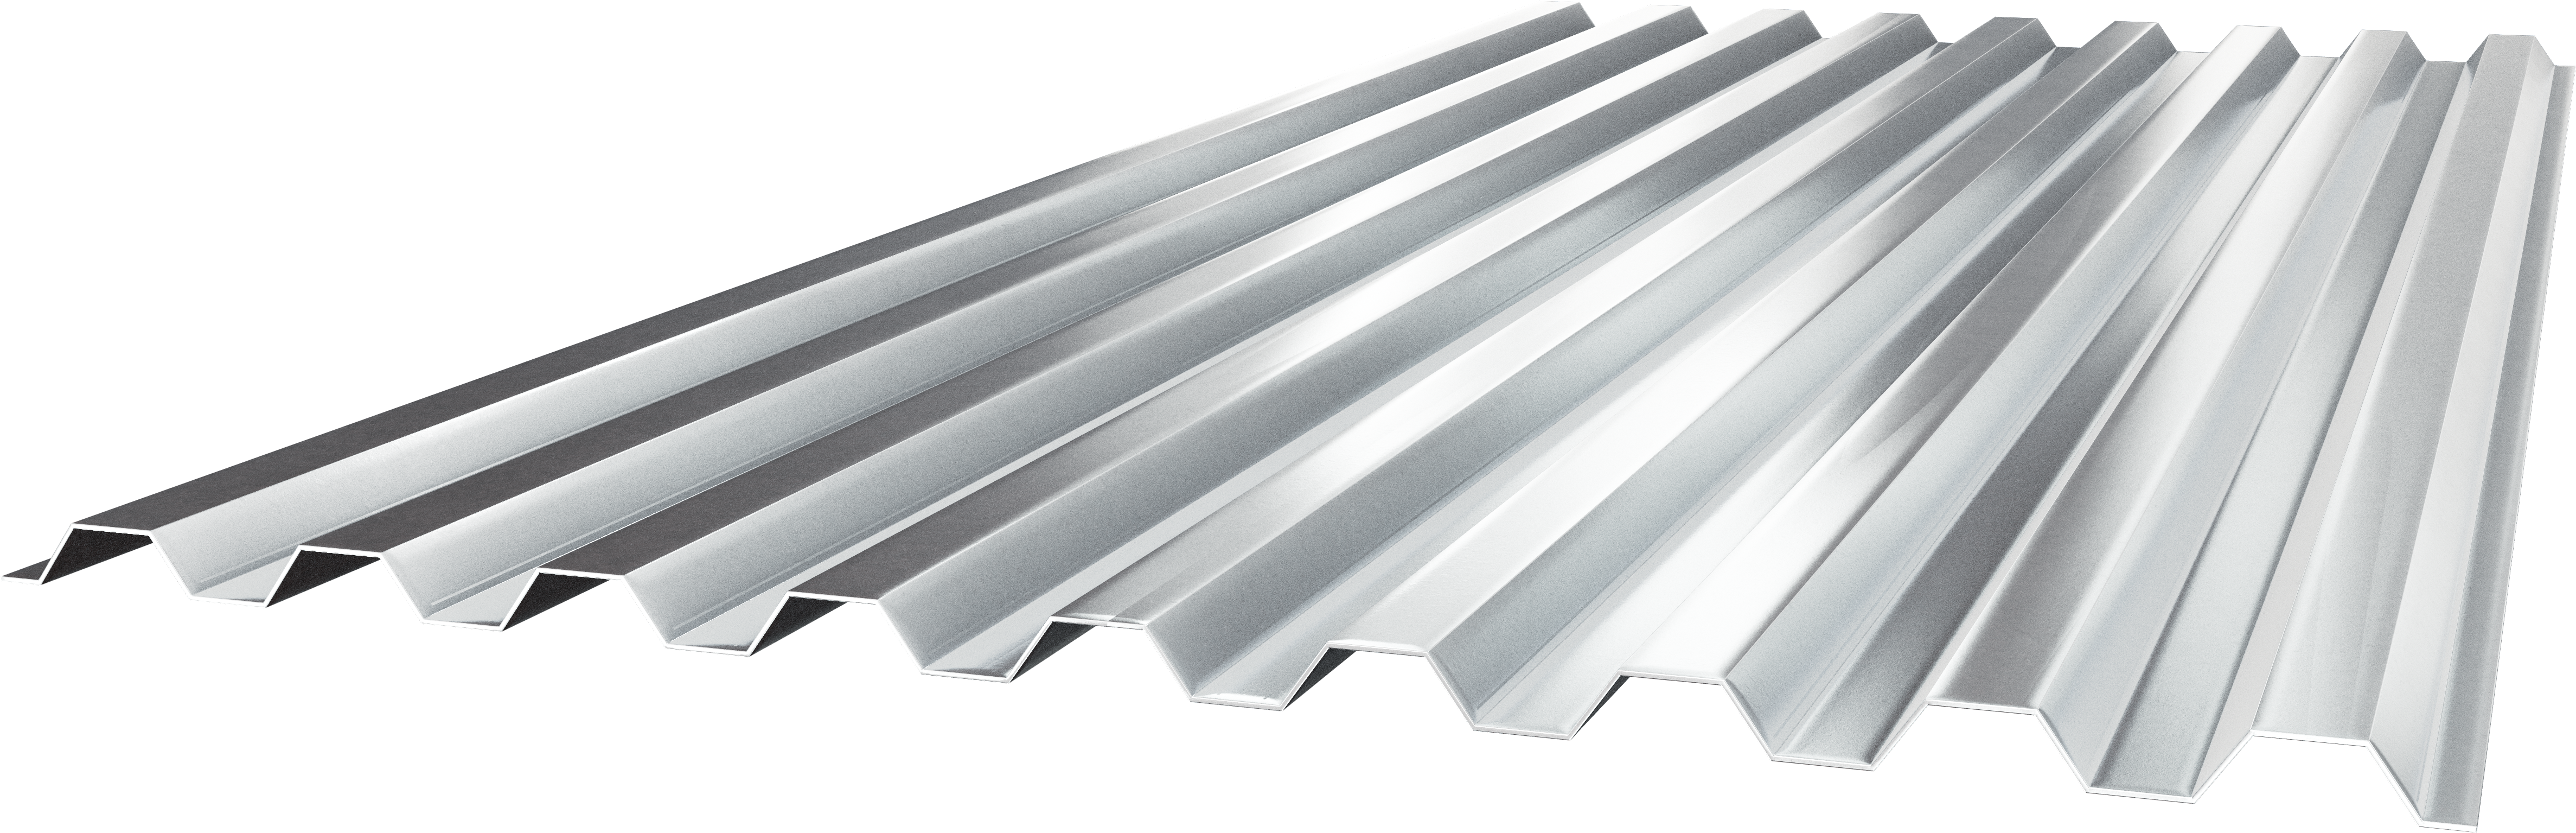 1.0 Steel Form Deck | Metal Rolled Steel | Cordeck